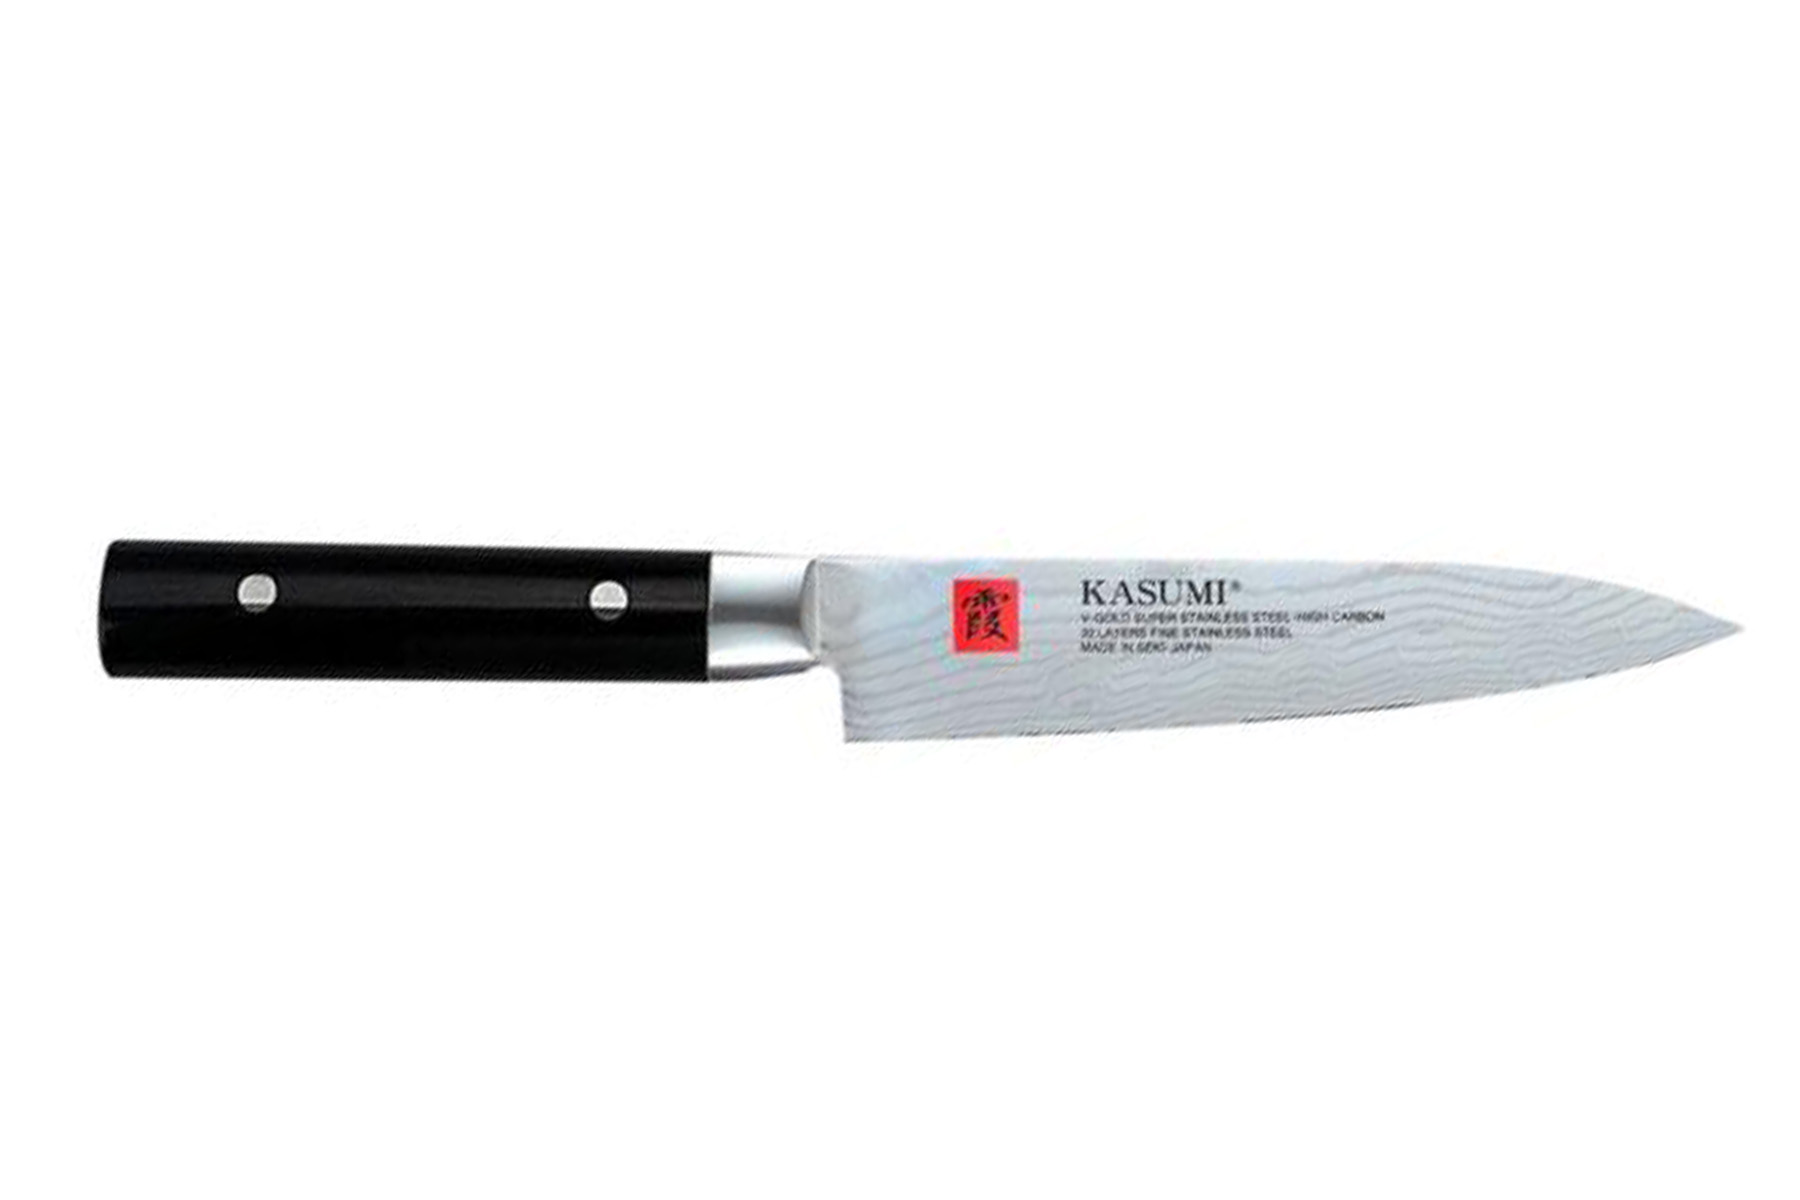 Couteau de cuisine japonais Kasumi Damas 15 cm universel